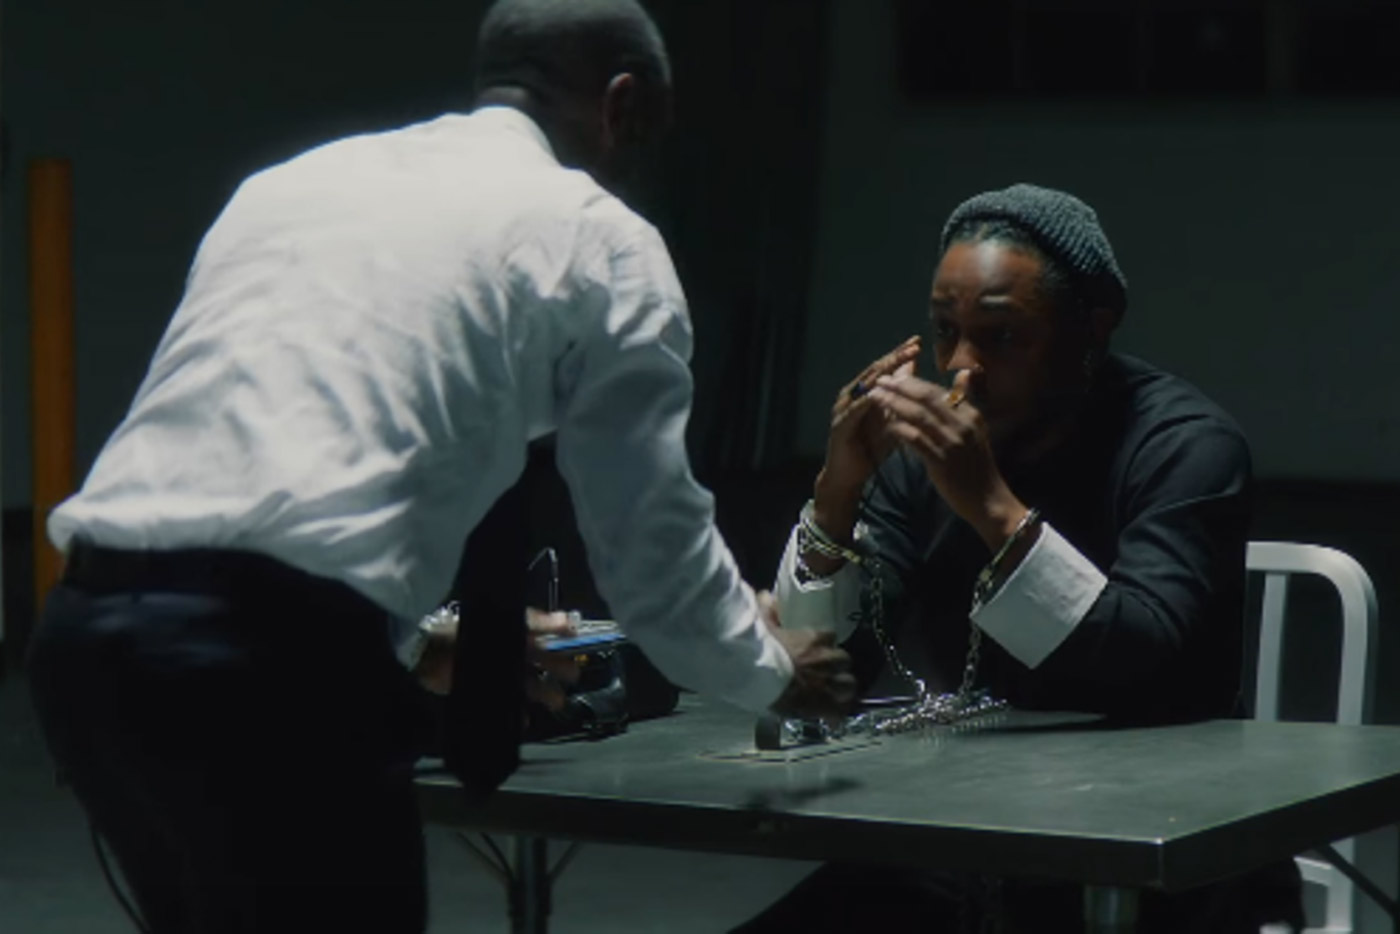 Nuevo videoclip de Kendrick Lamar para "DNA"